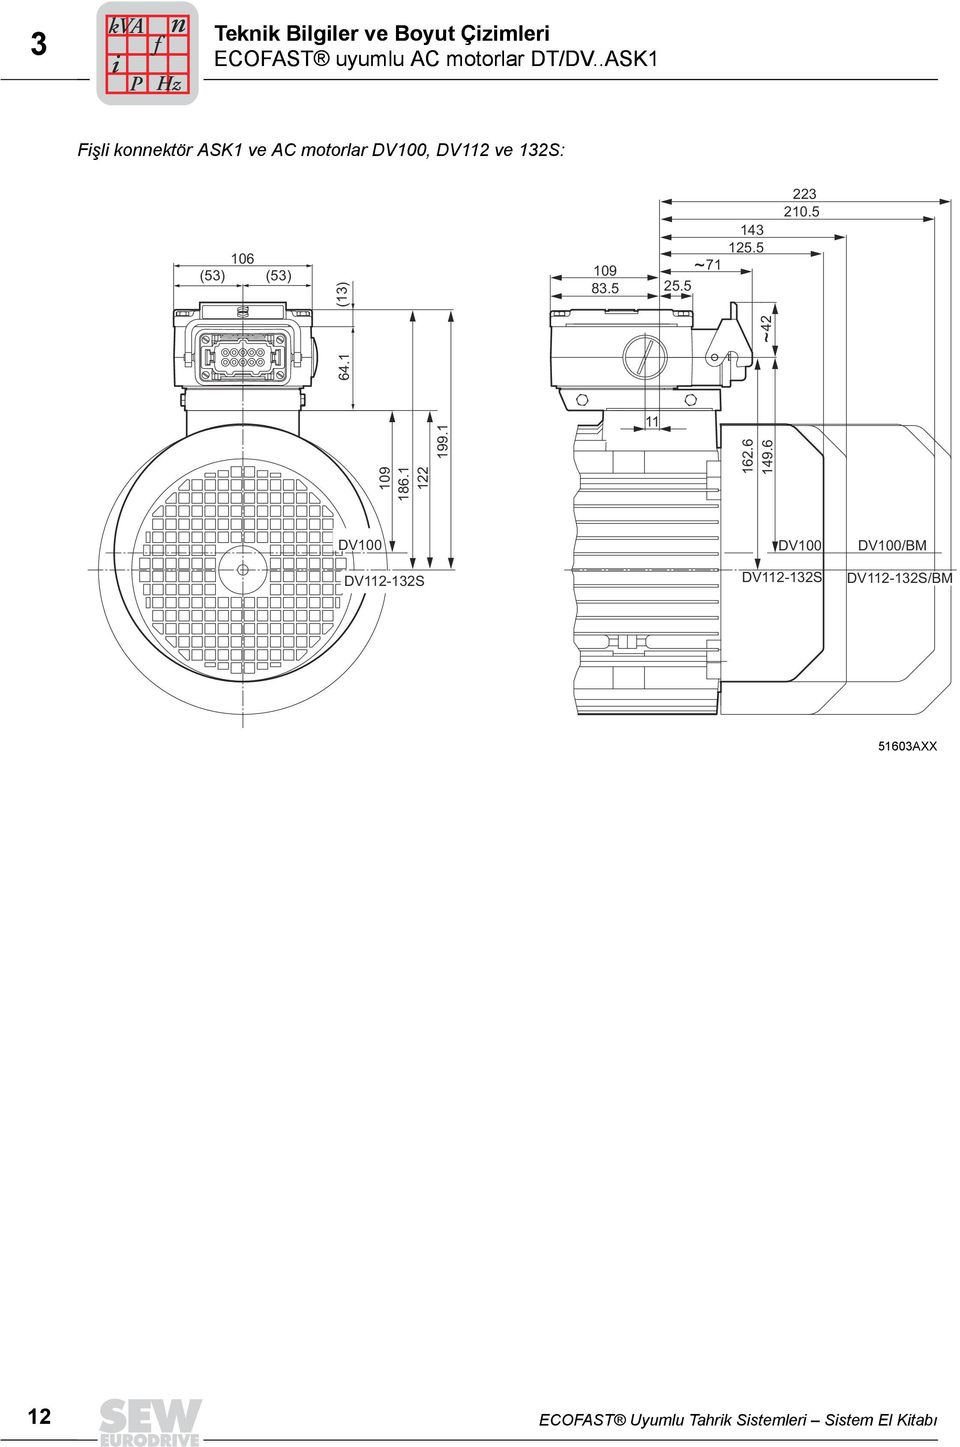 .ASK P Hz Fişli konnektör ASK ve AC motorlar DV00, DV ve S: 06 () ()